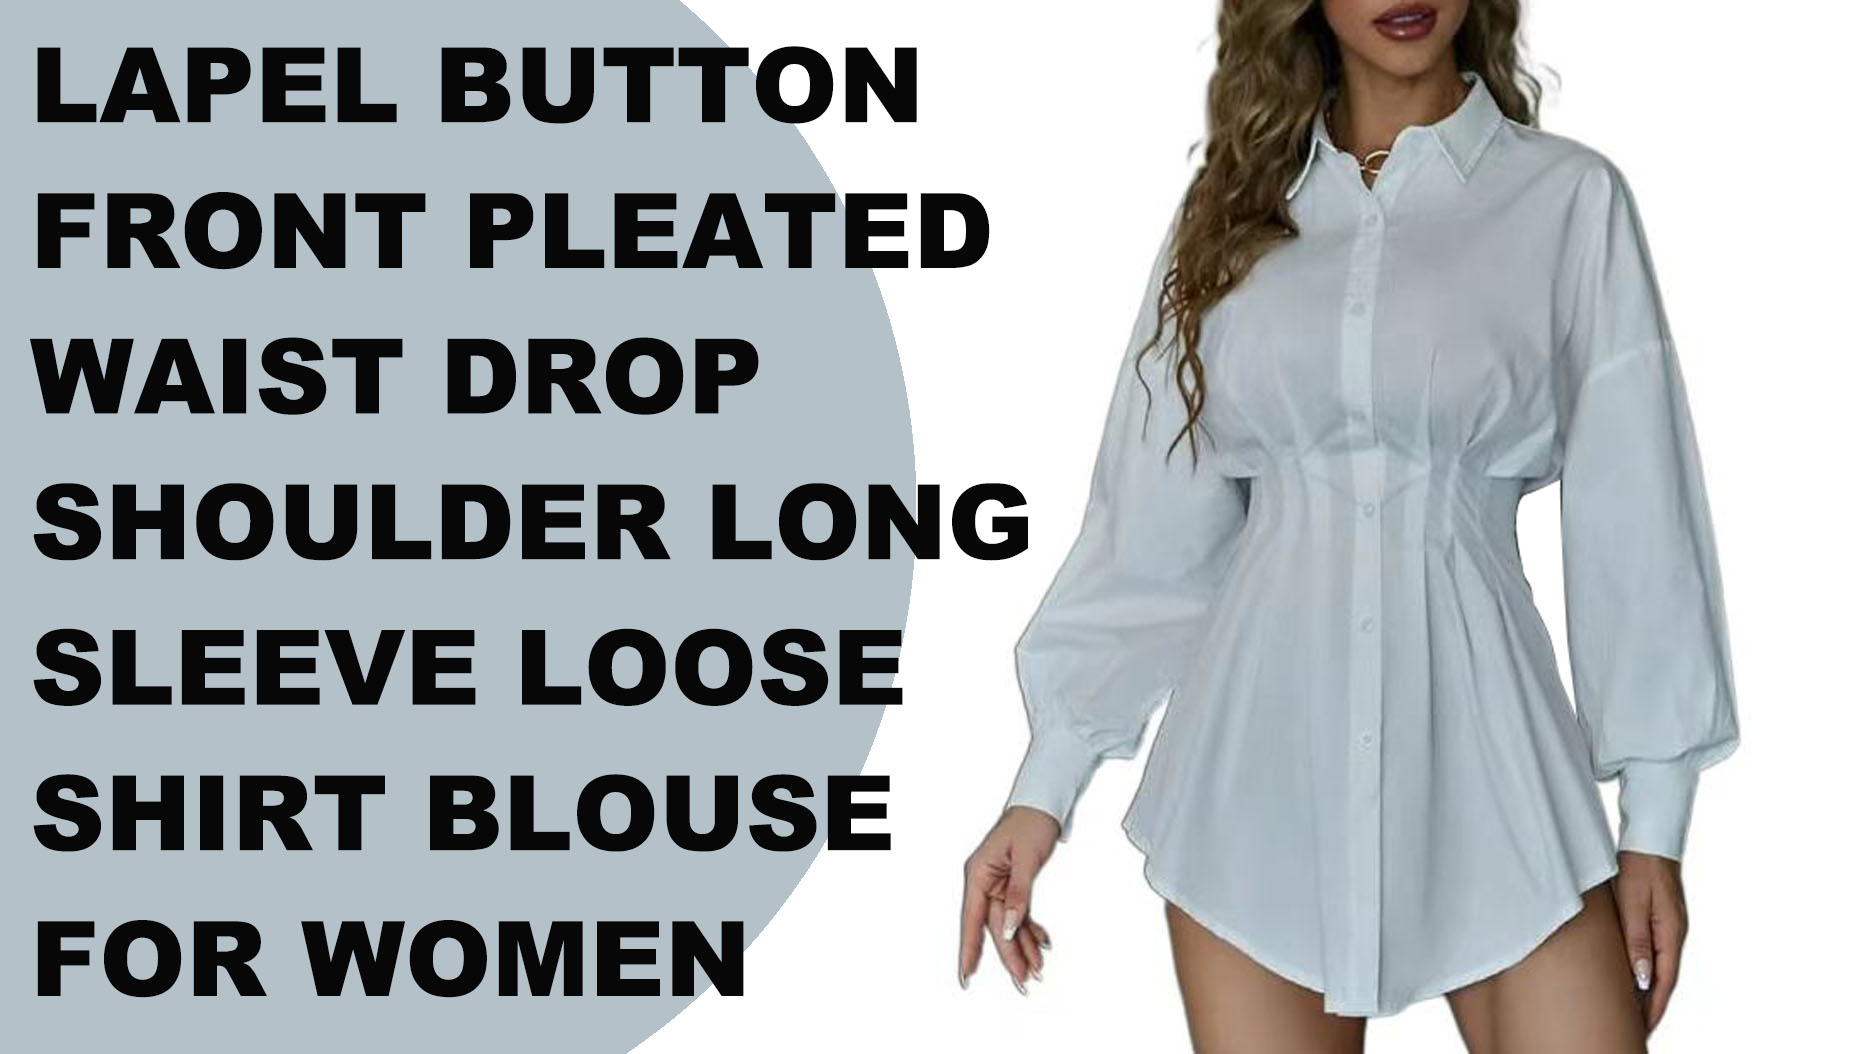 शरद ल्यापल बटन अगाडि pleated कम्मर ड्रप काँध लामो बाहुला खुल्ला शर्ट महिलाहरु को लागी ब्लाउज